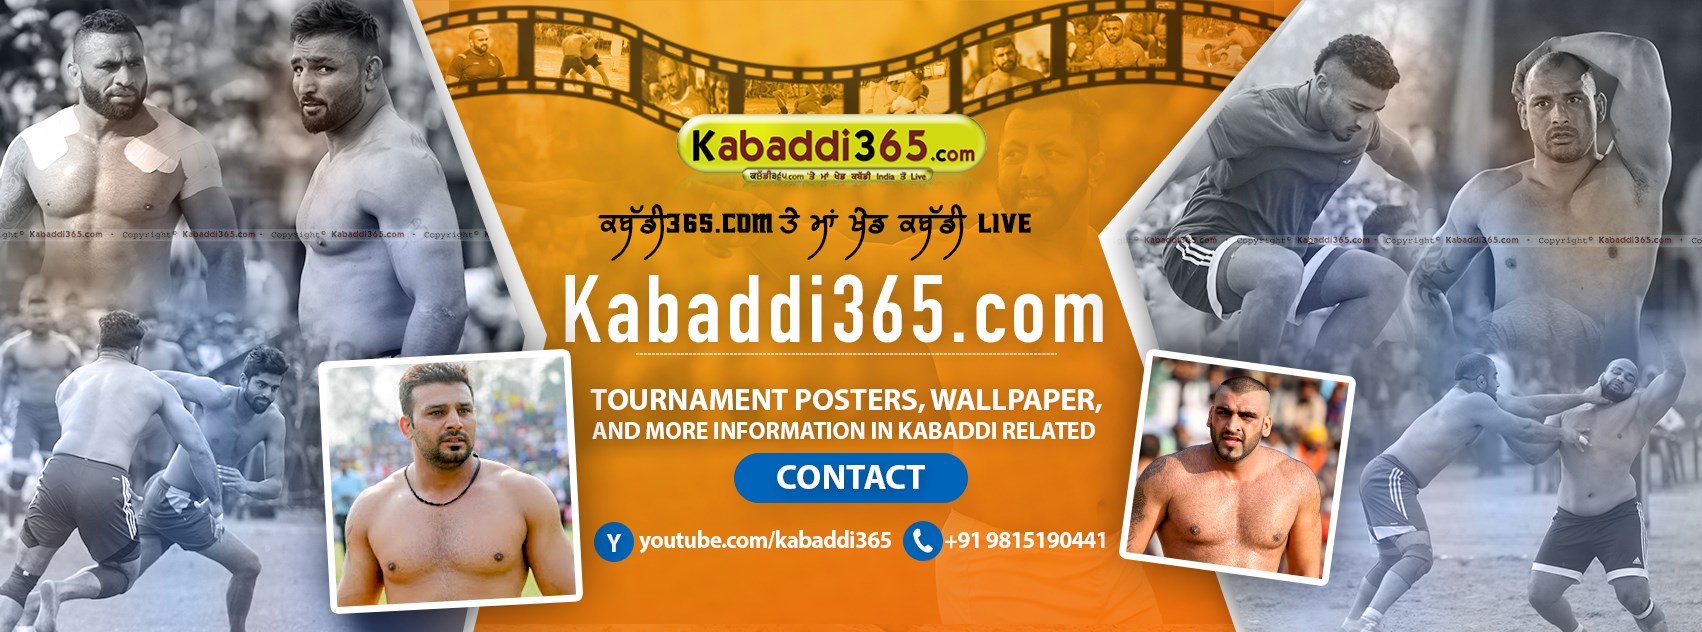 Kabaddi365.com